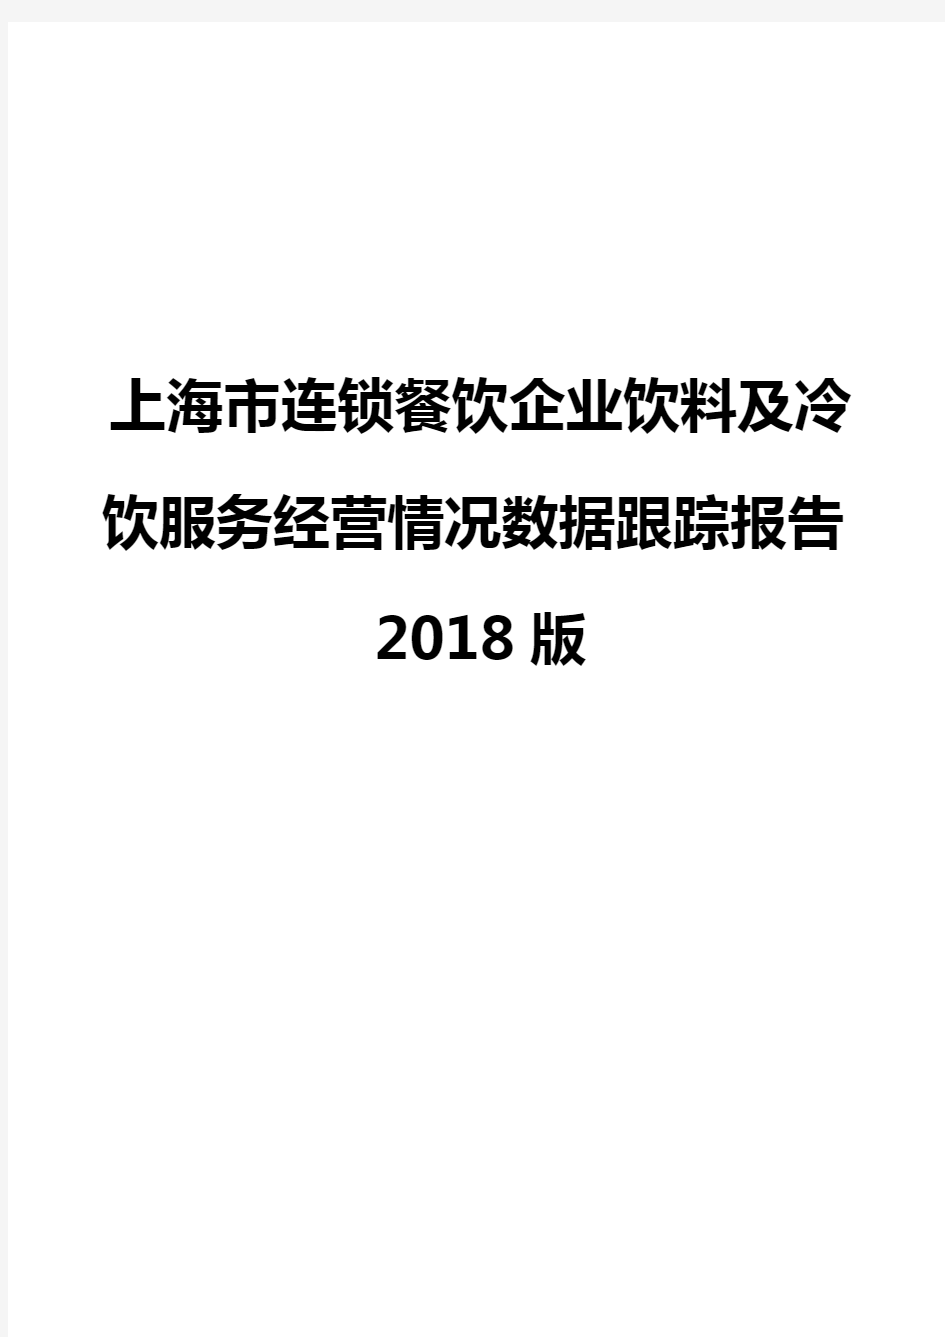 上海市连锁餐饮企业饮料及冷饮服务经营情况数据跟踪报告2018版